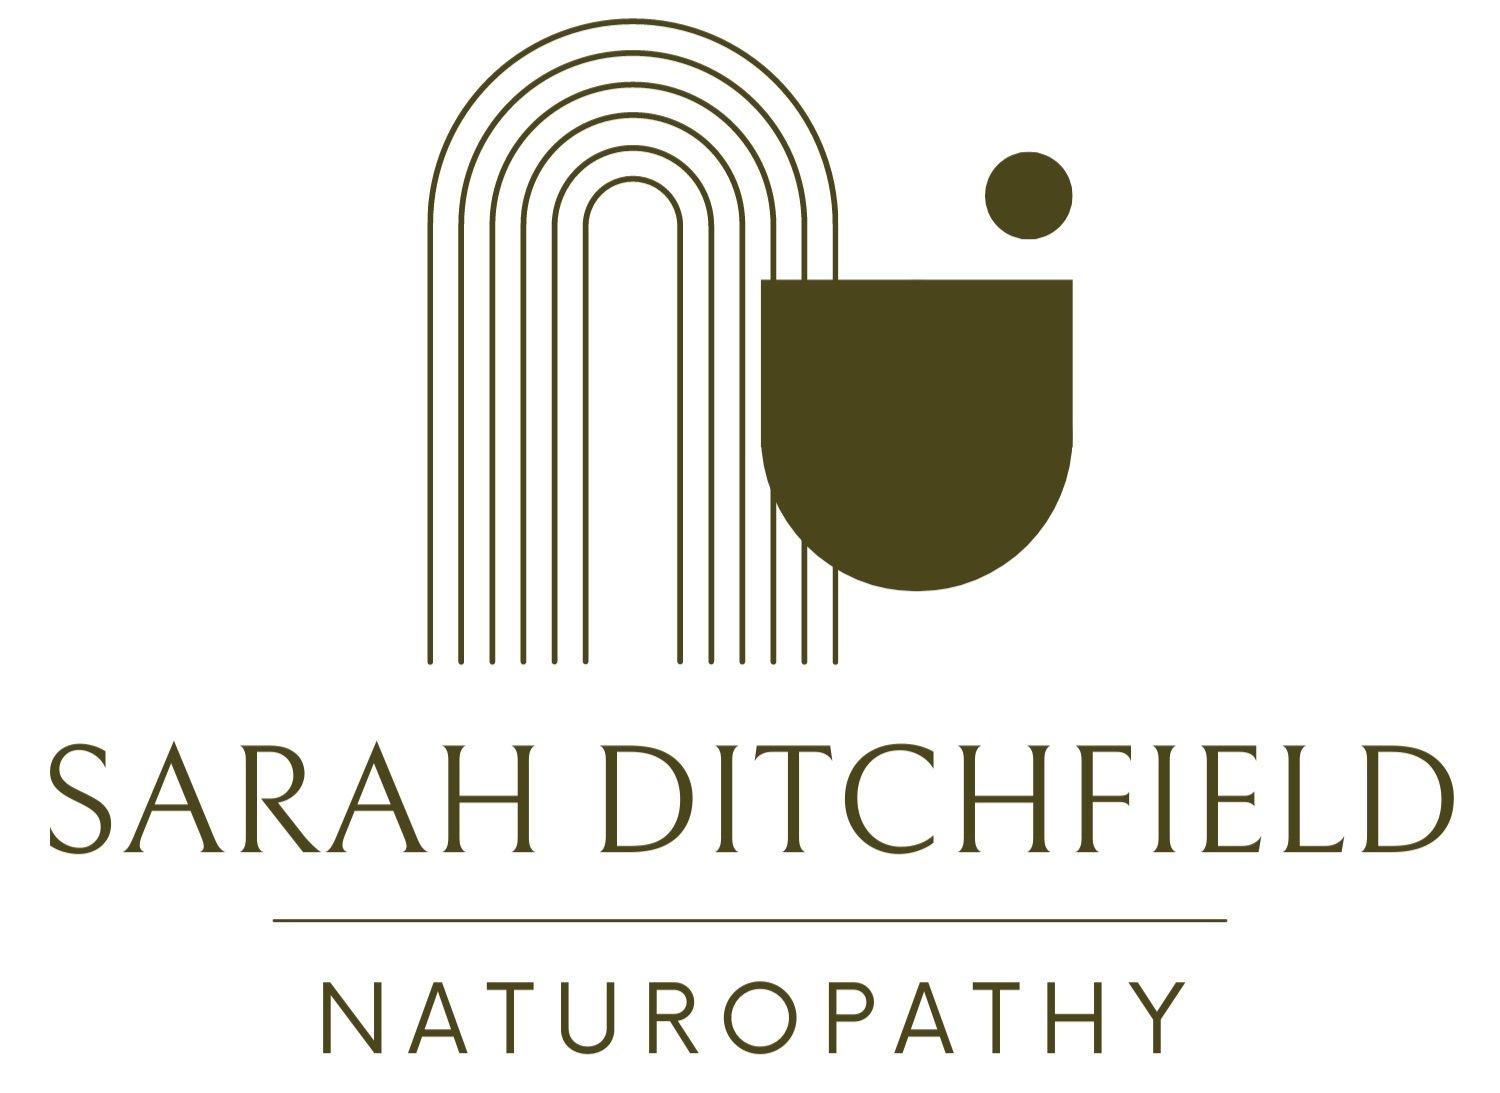 Sarah Ditchfield Naturopathy